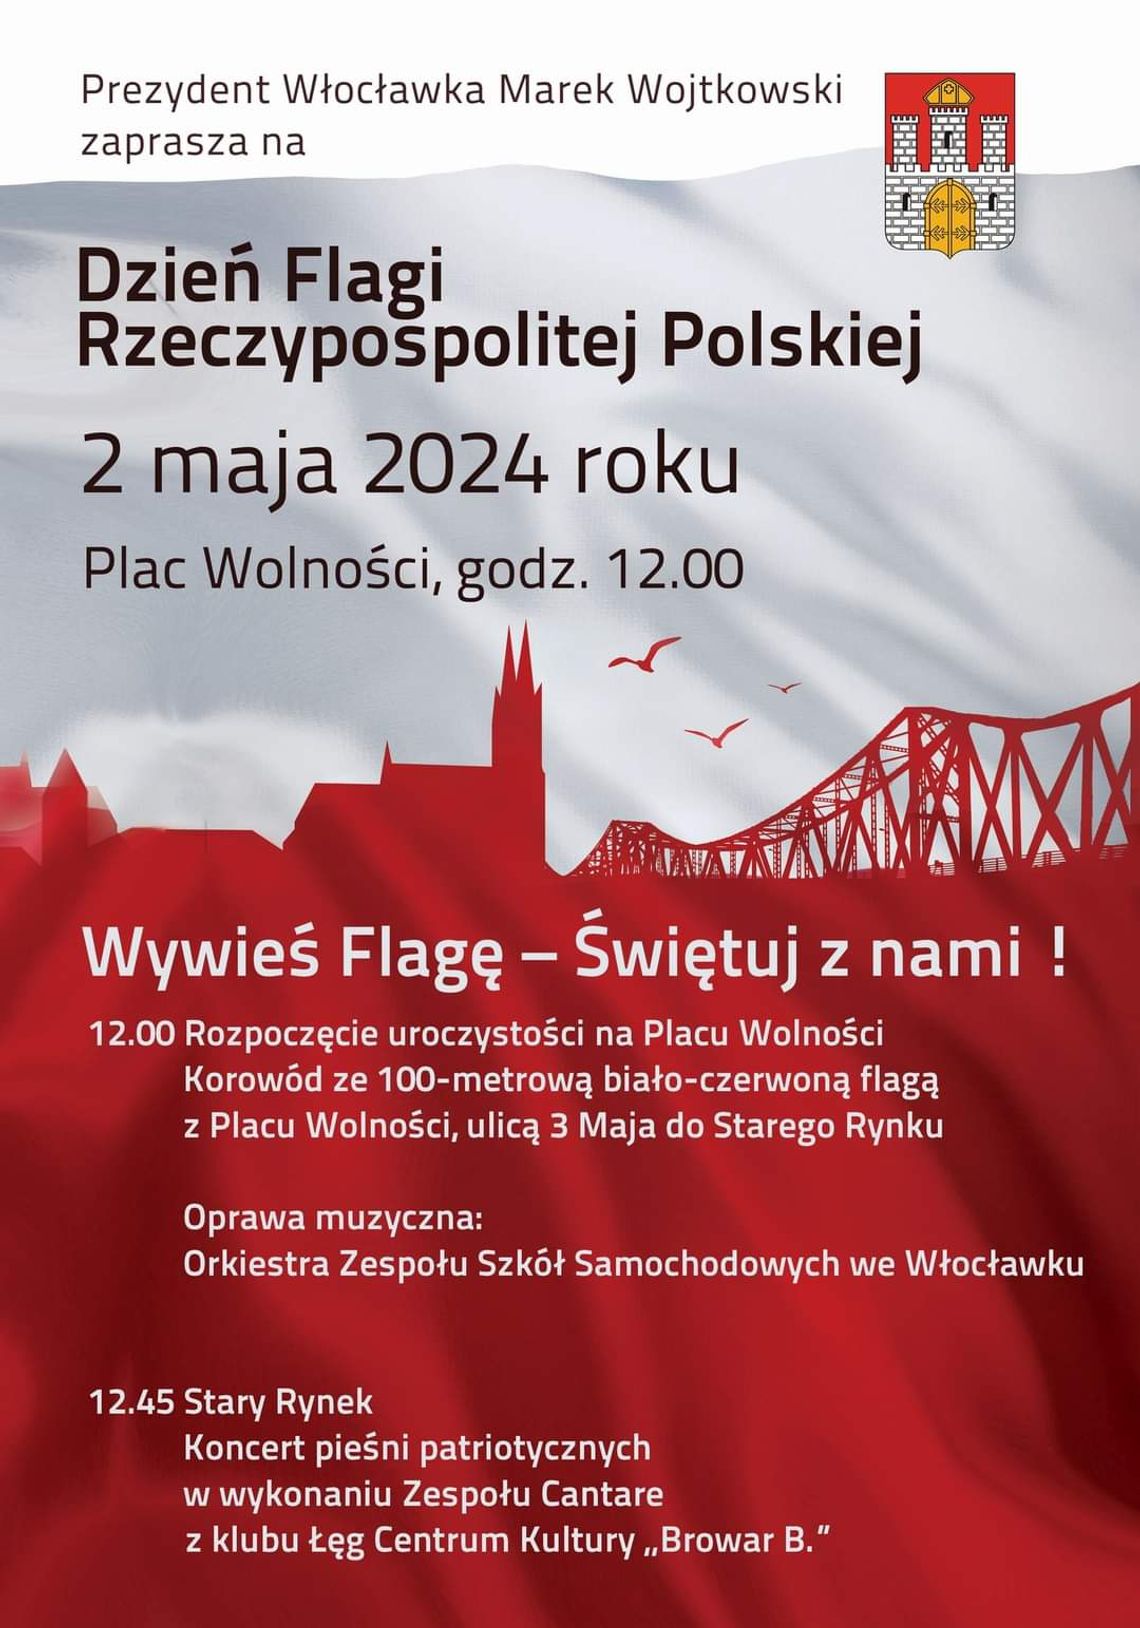 W Dniu Flagi we Włocławku odbędzie się...